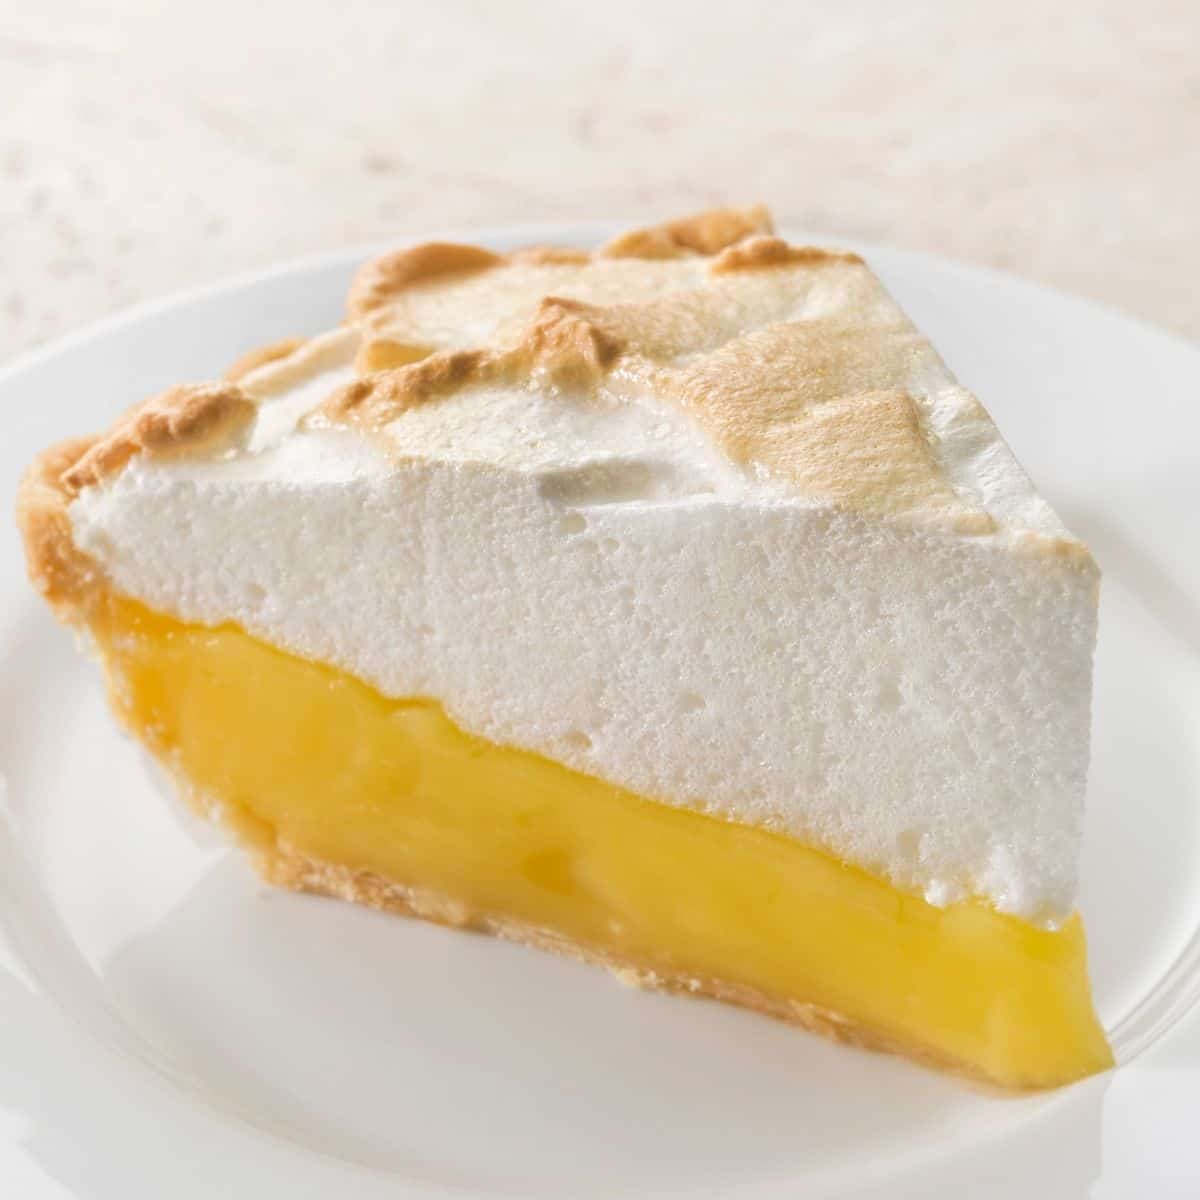 Slice of vegan lemon meringue pie on white plate.